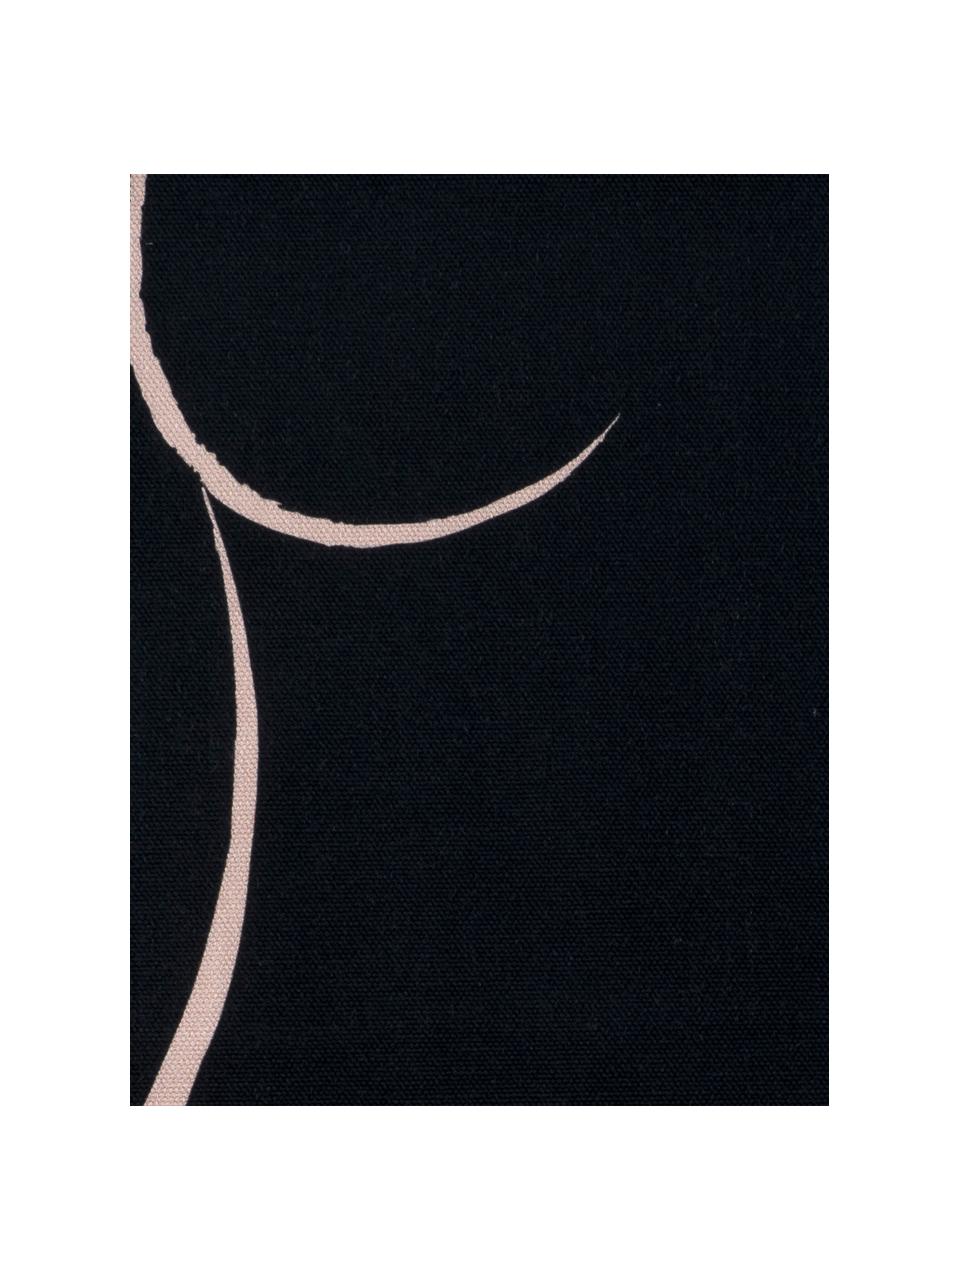 Poszewka na poduszkę Curves, 100% bawełna, Czarny,blady różowy, S 40 x D 40 cm